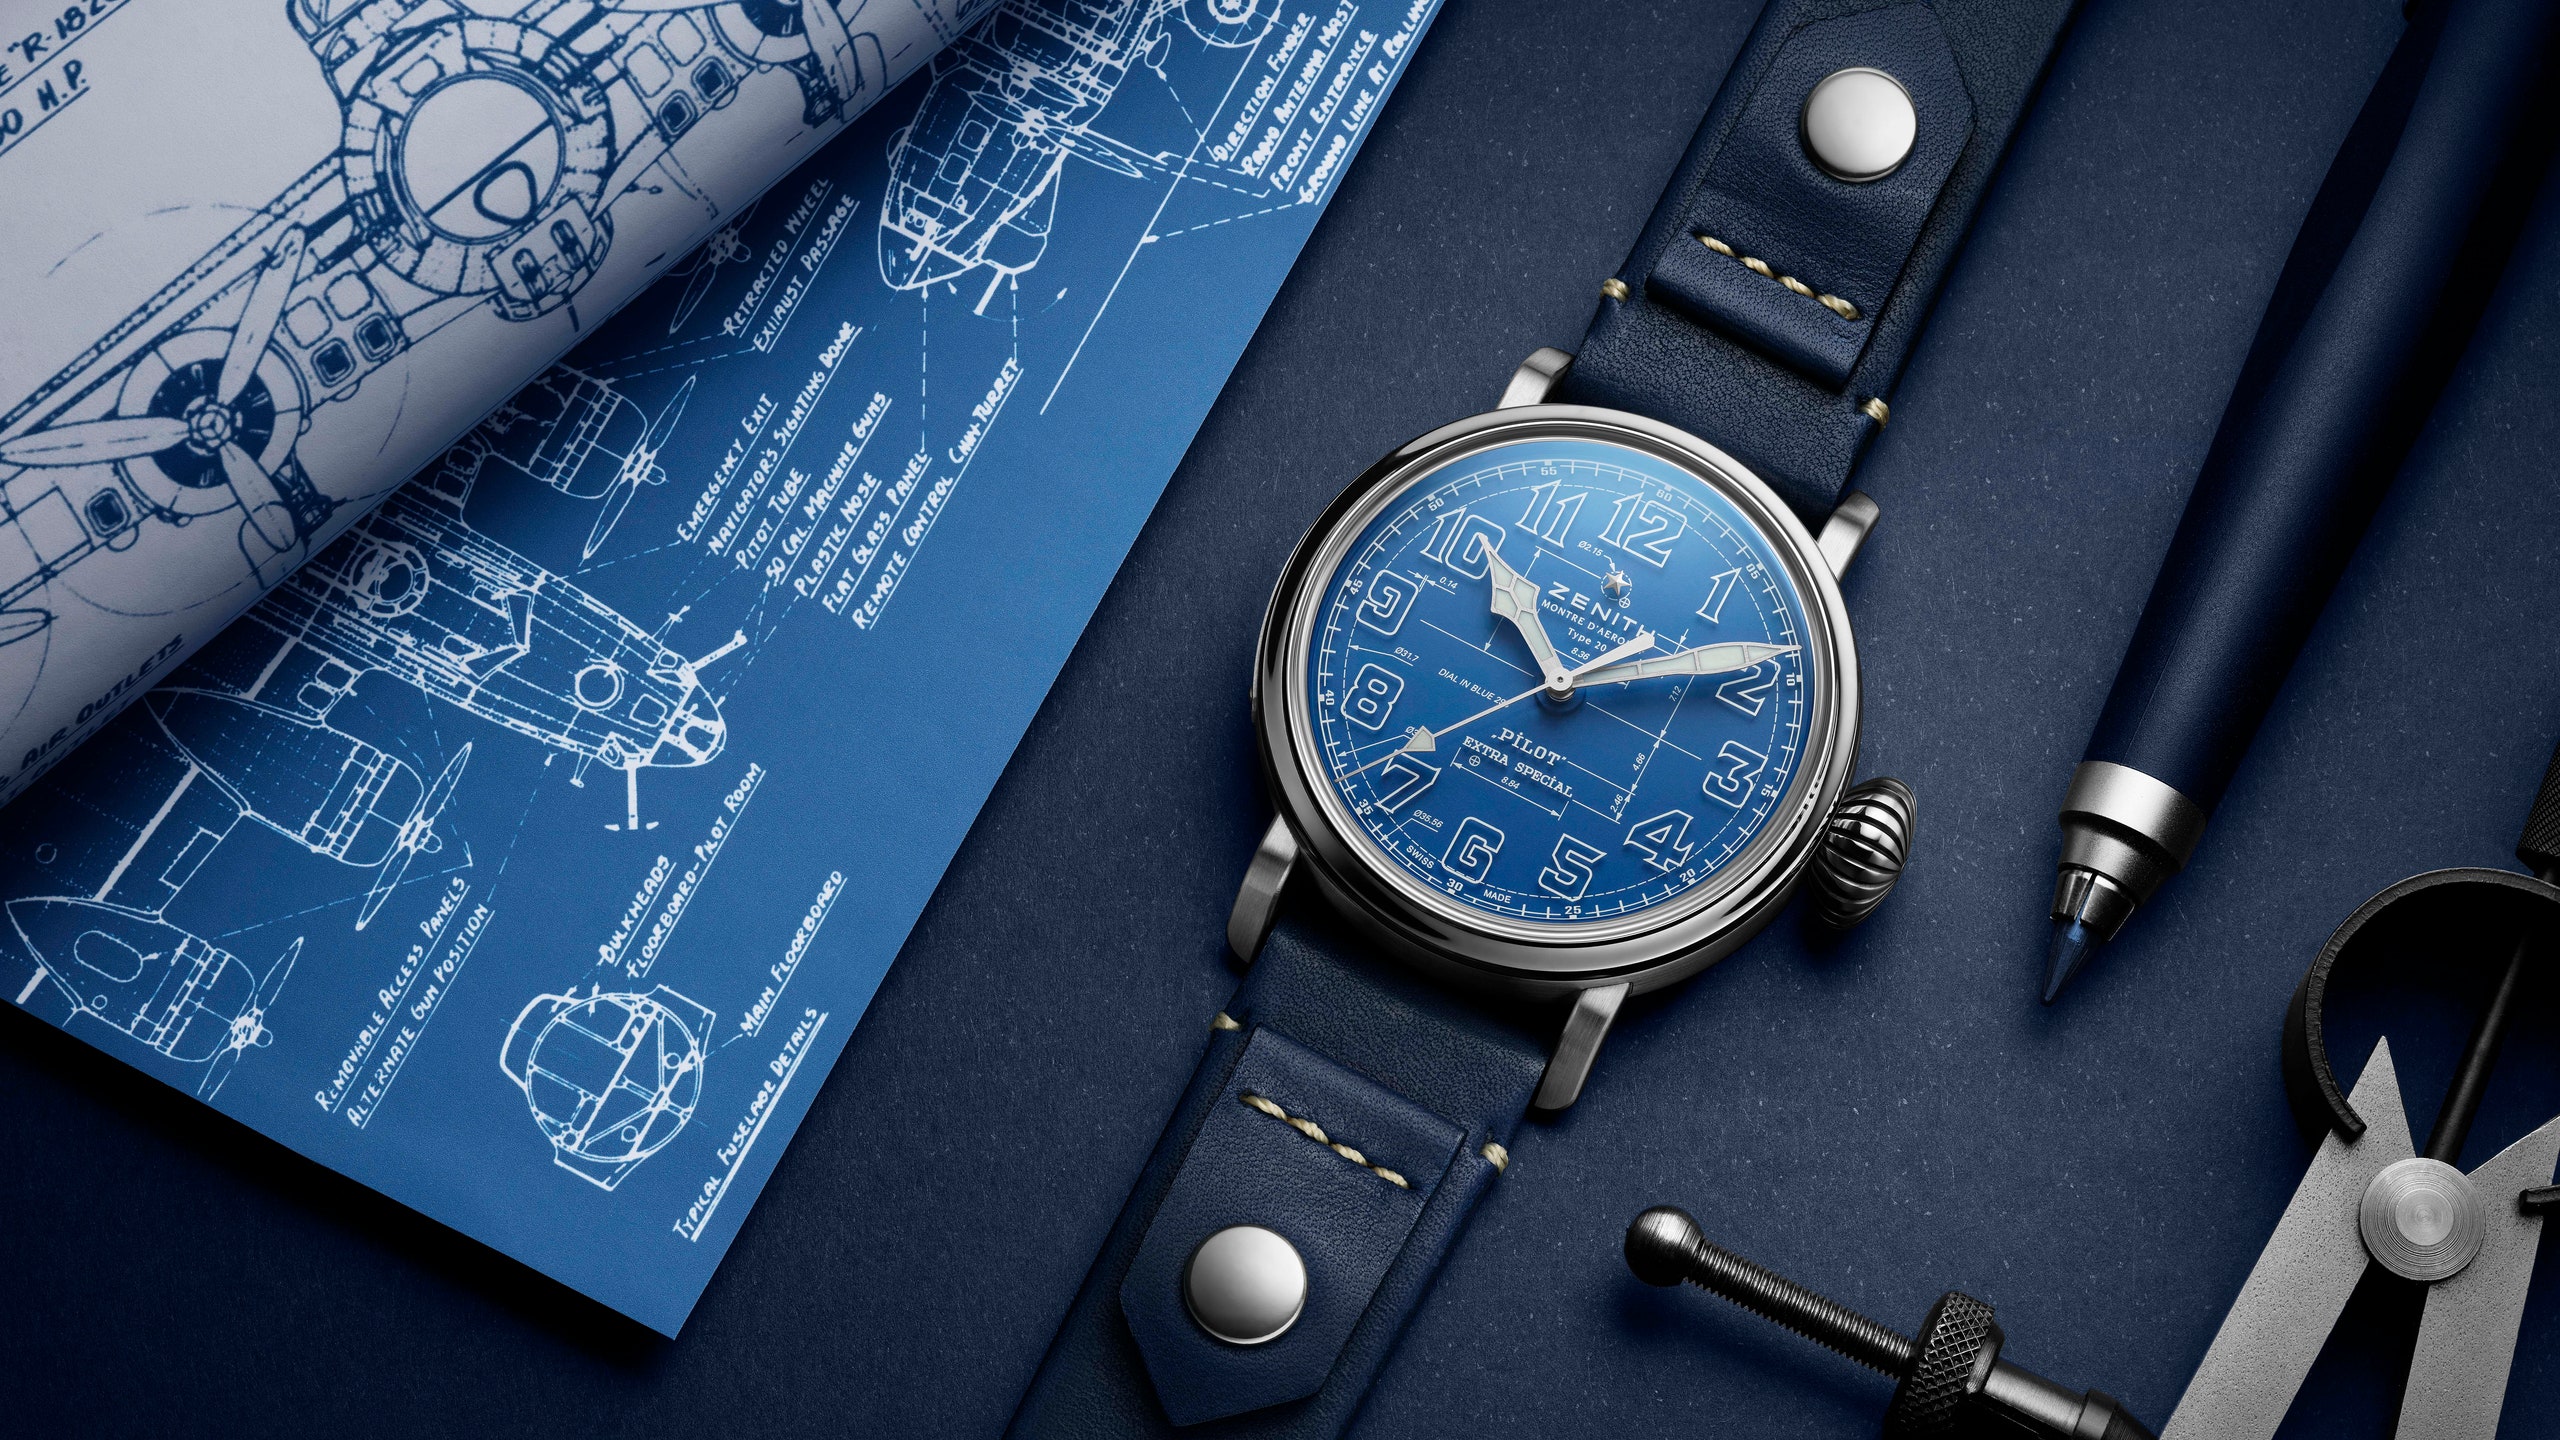 Аксессуар дня небесноголубые часы Zenith Pilot Type 20 Blueprint вдохновленные чертежами первых самолетов